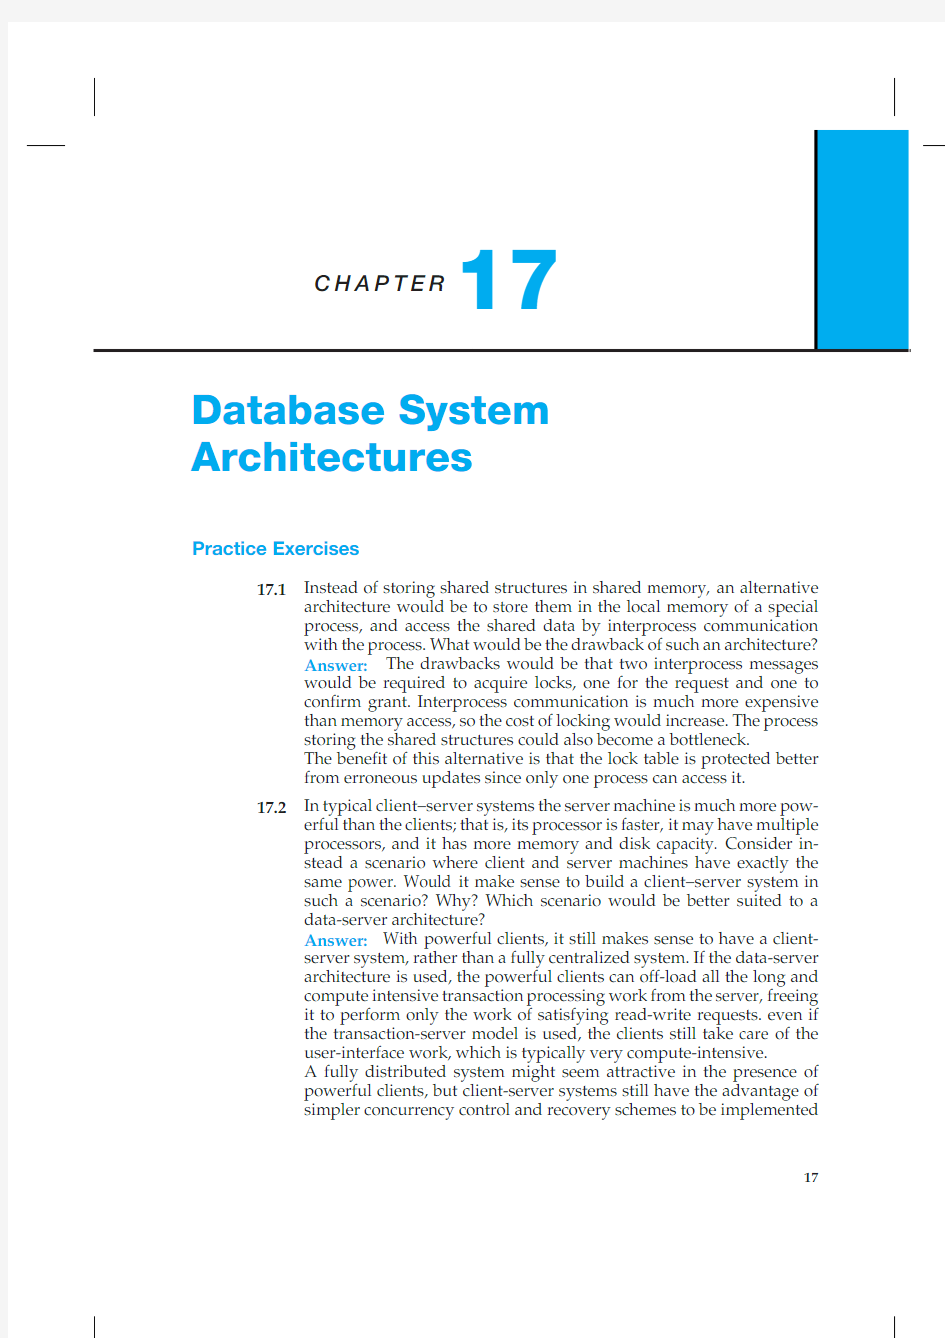 数据库系统概念(database system concepts)英文第六版 课后练习题 答案 第17章